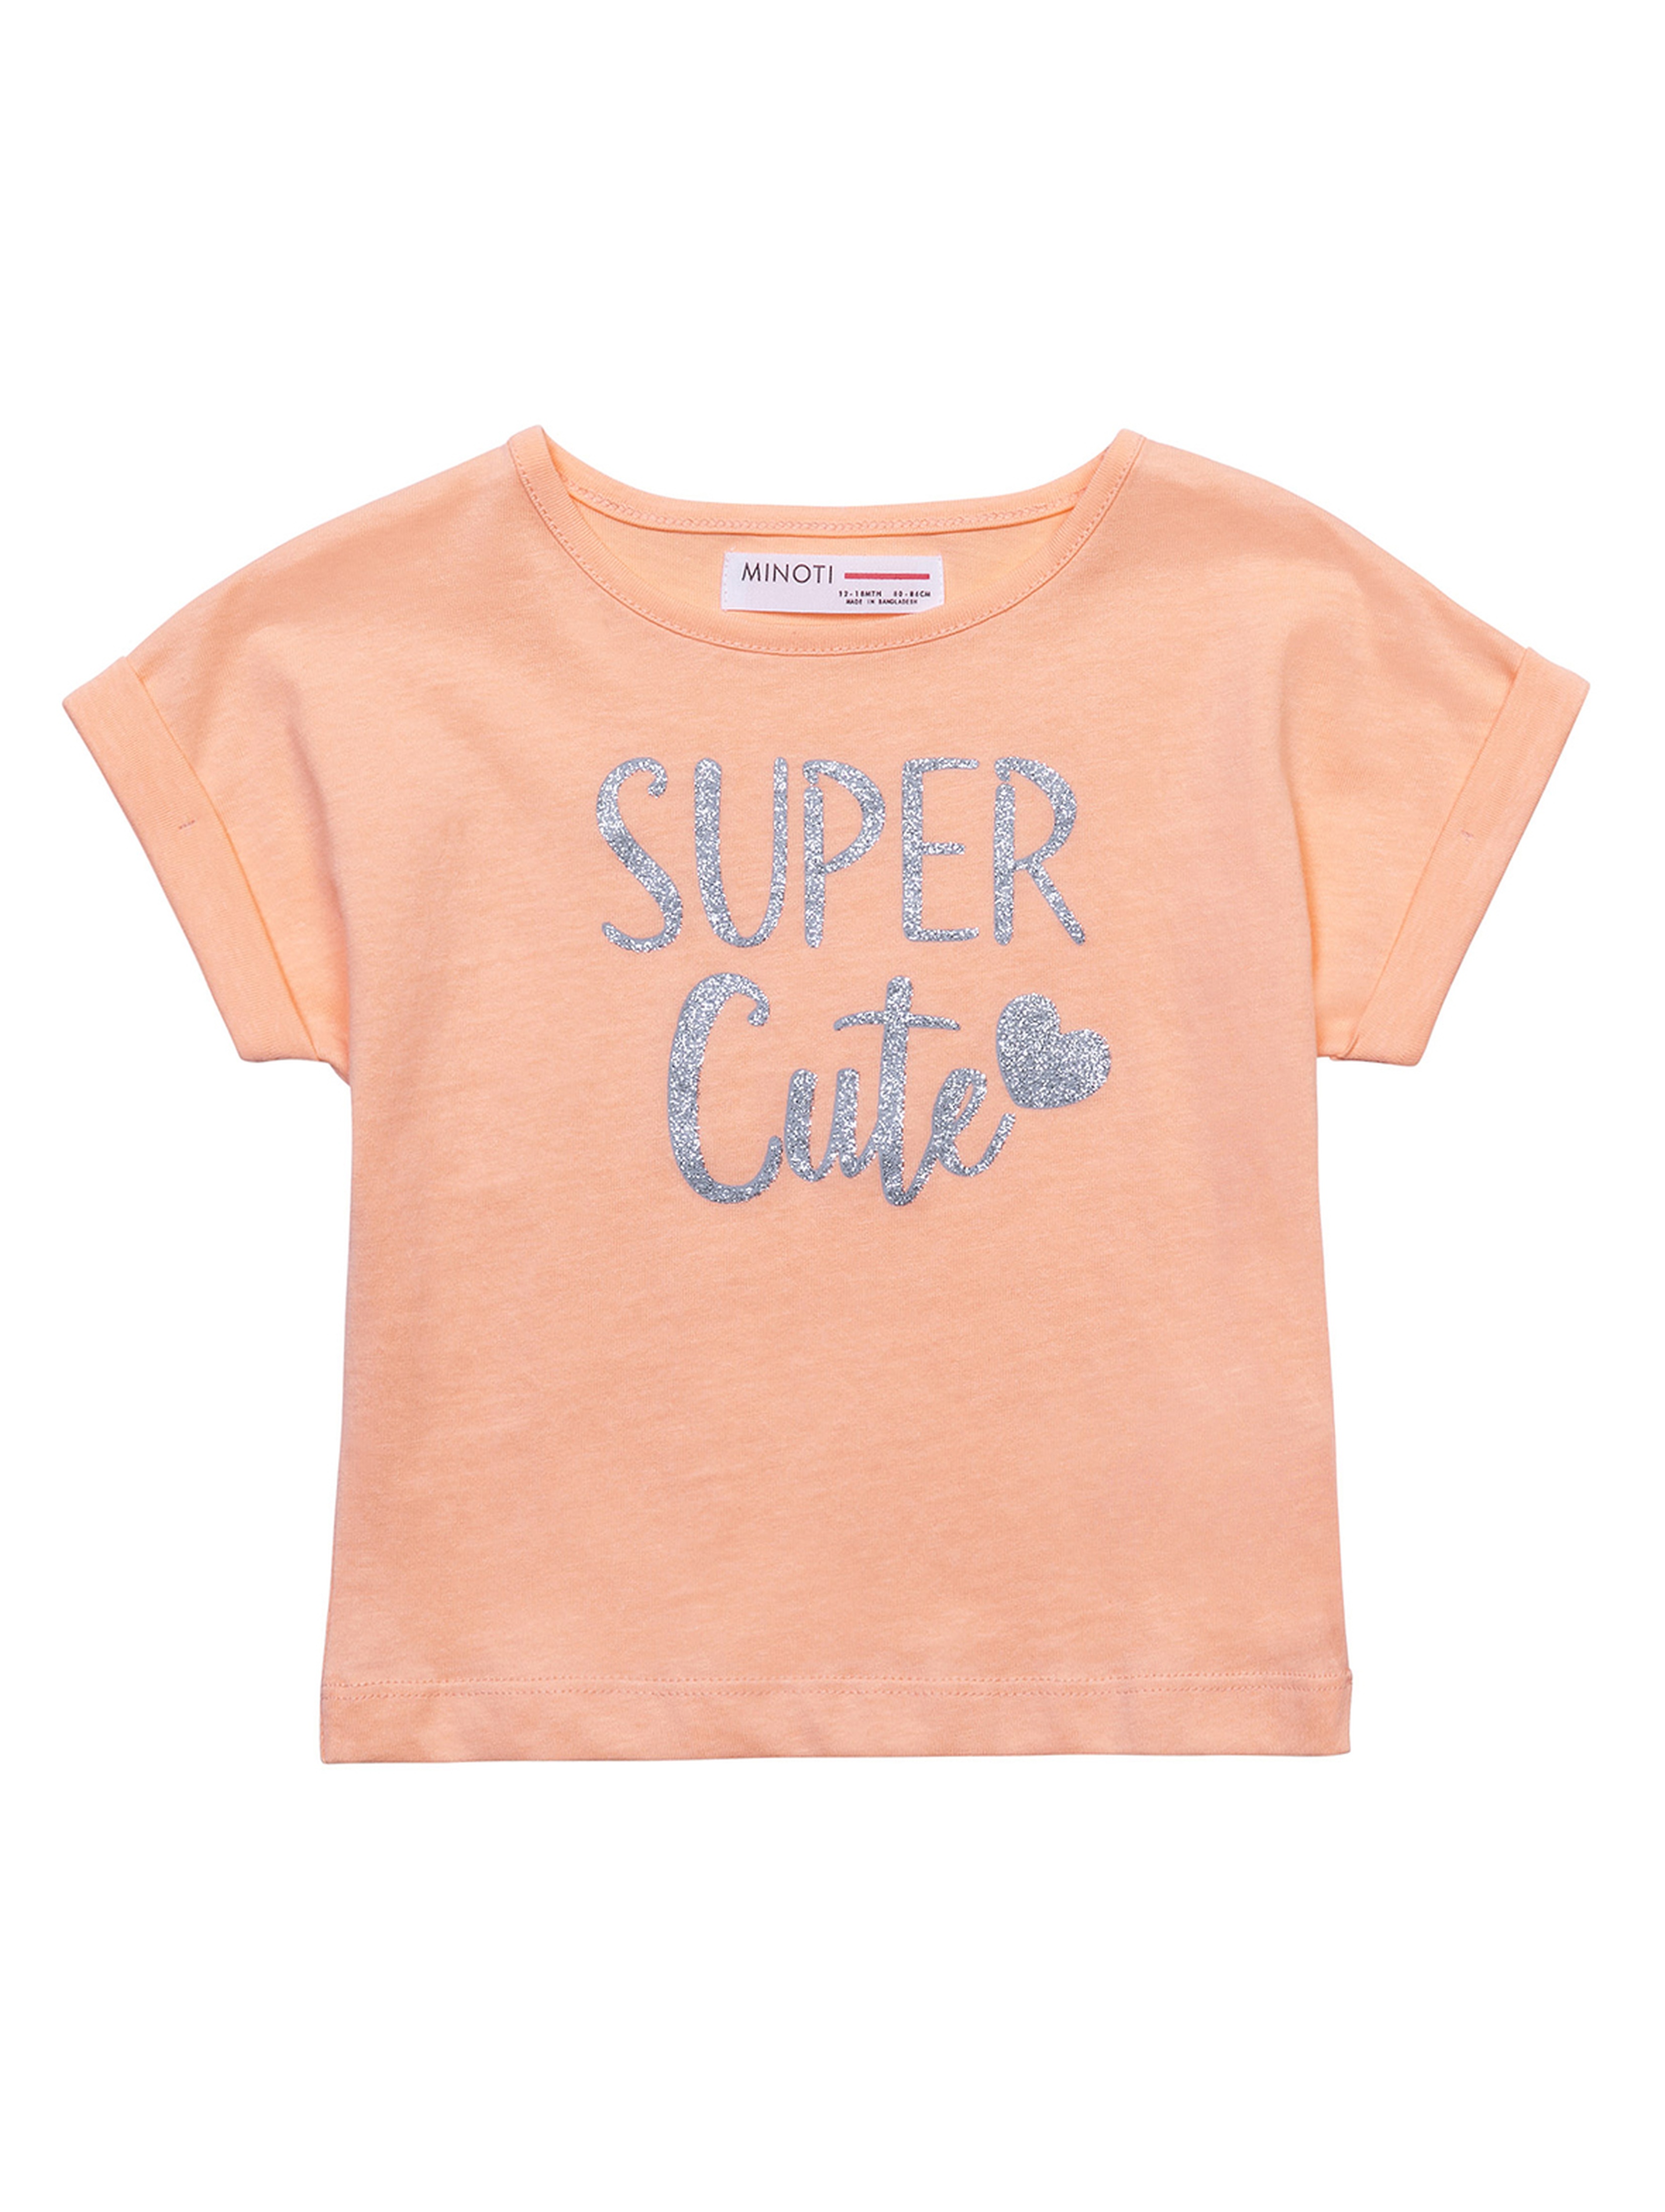 Bawełniany t-shirt pomarańczowy dziewczęcy- Super Cute